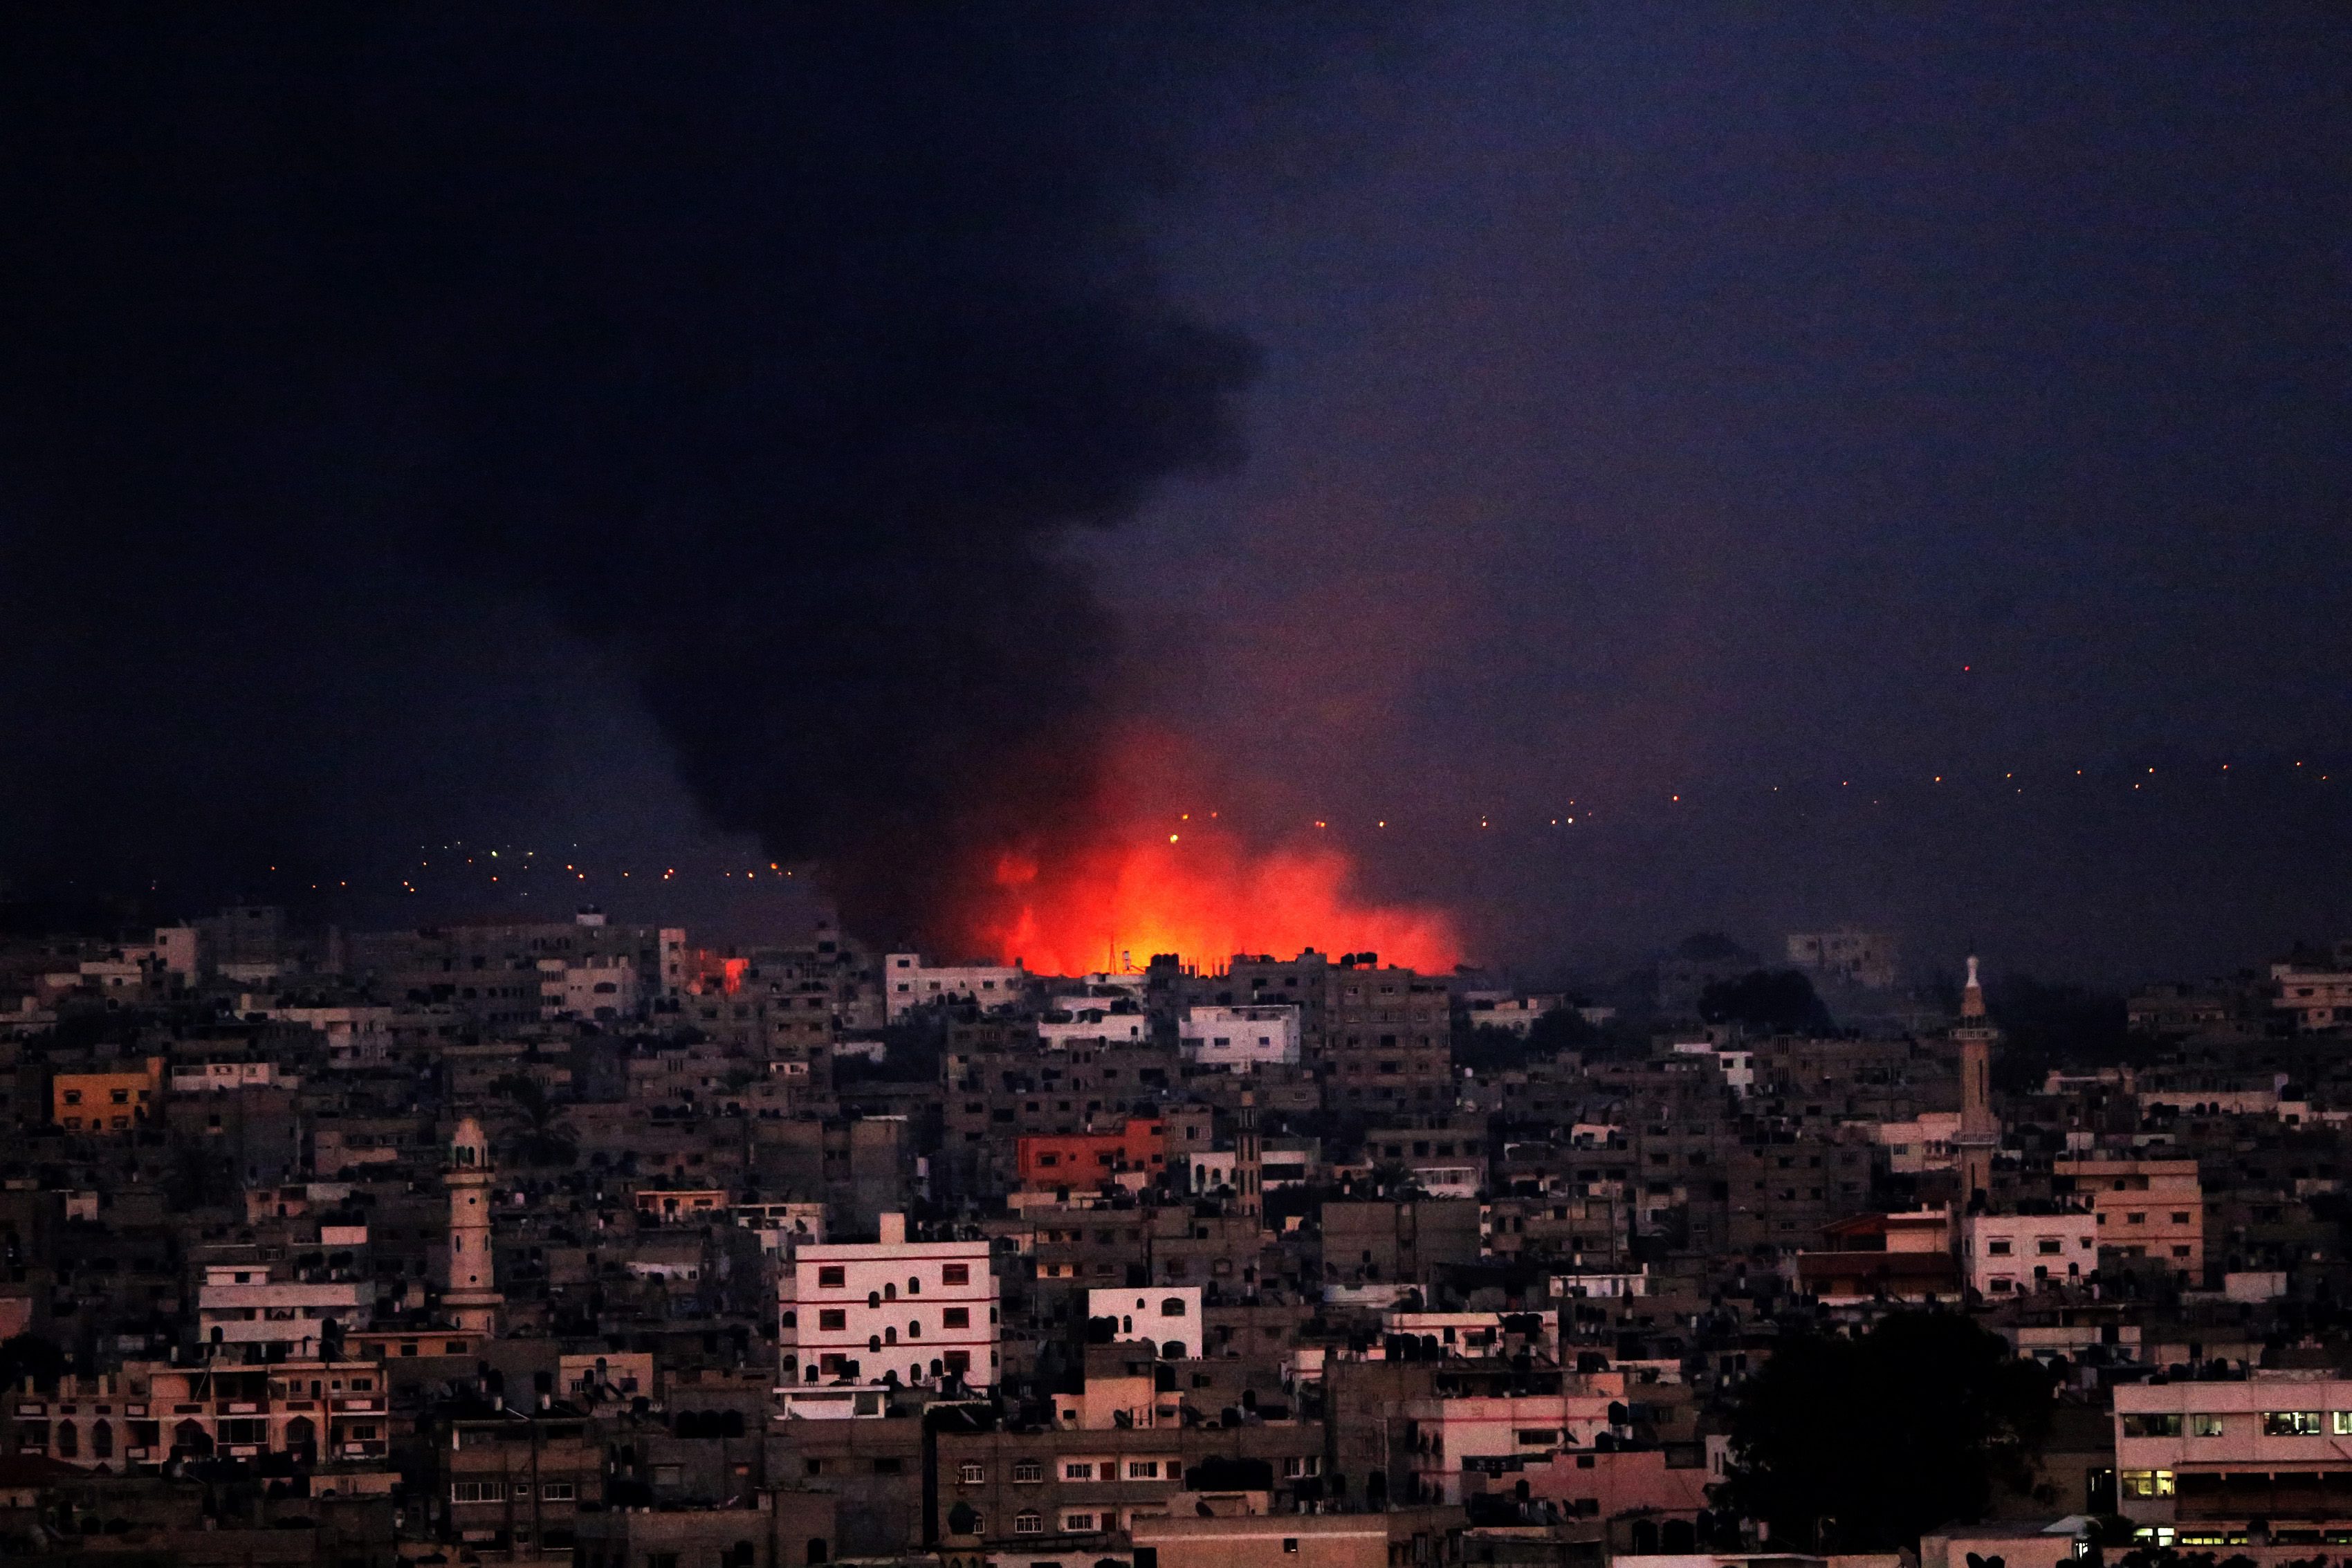 Ολονύκτιες επιδρομές στη Λωρίδα της Γάζας, ρουκέτες κατά του Ισραήλ